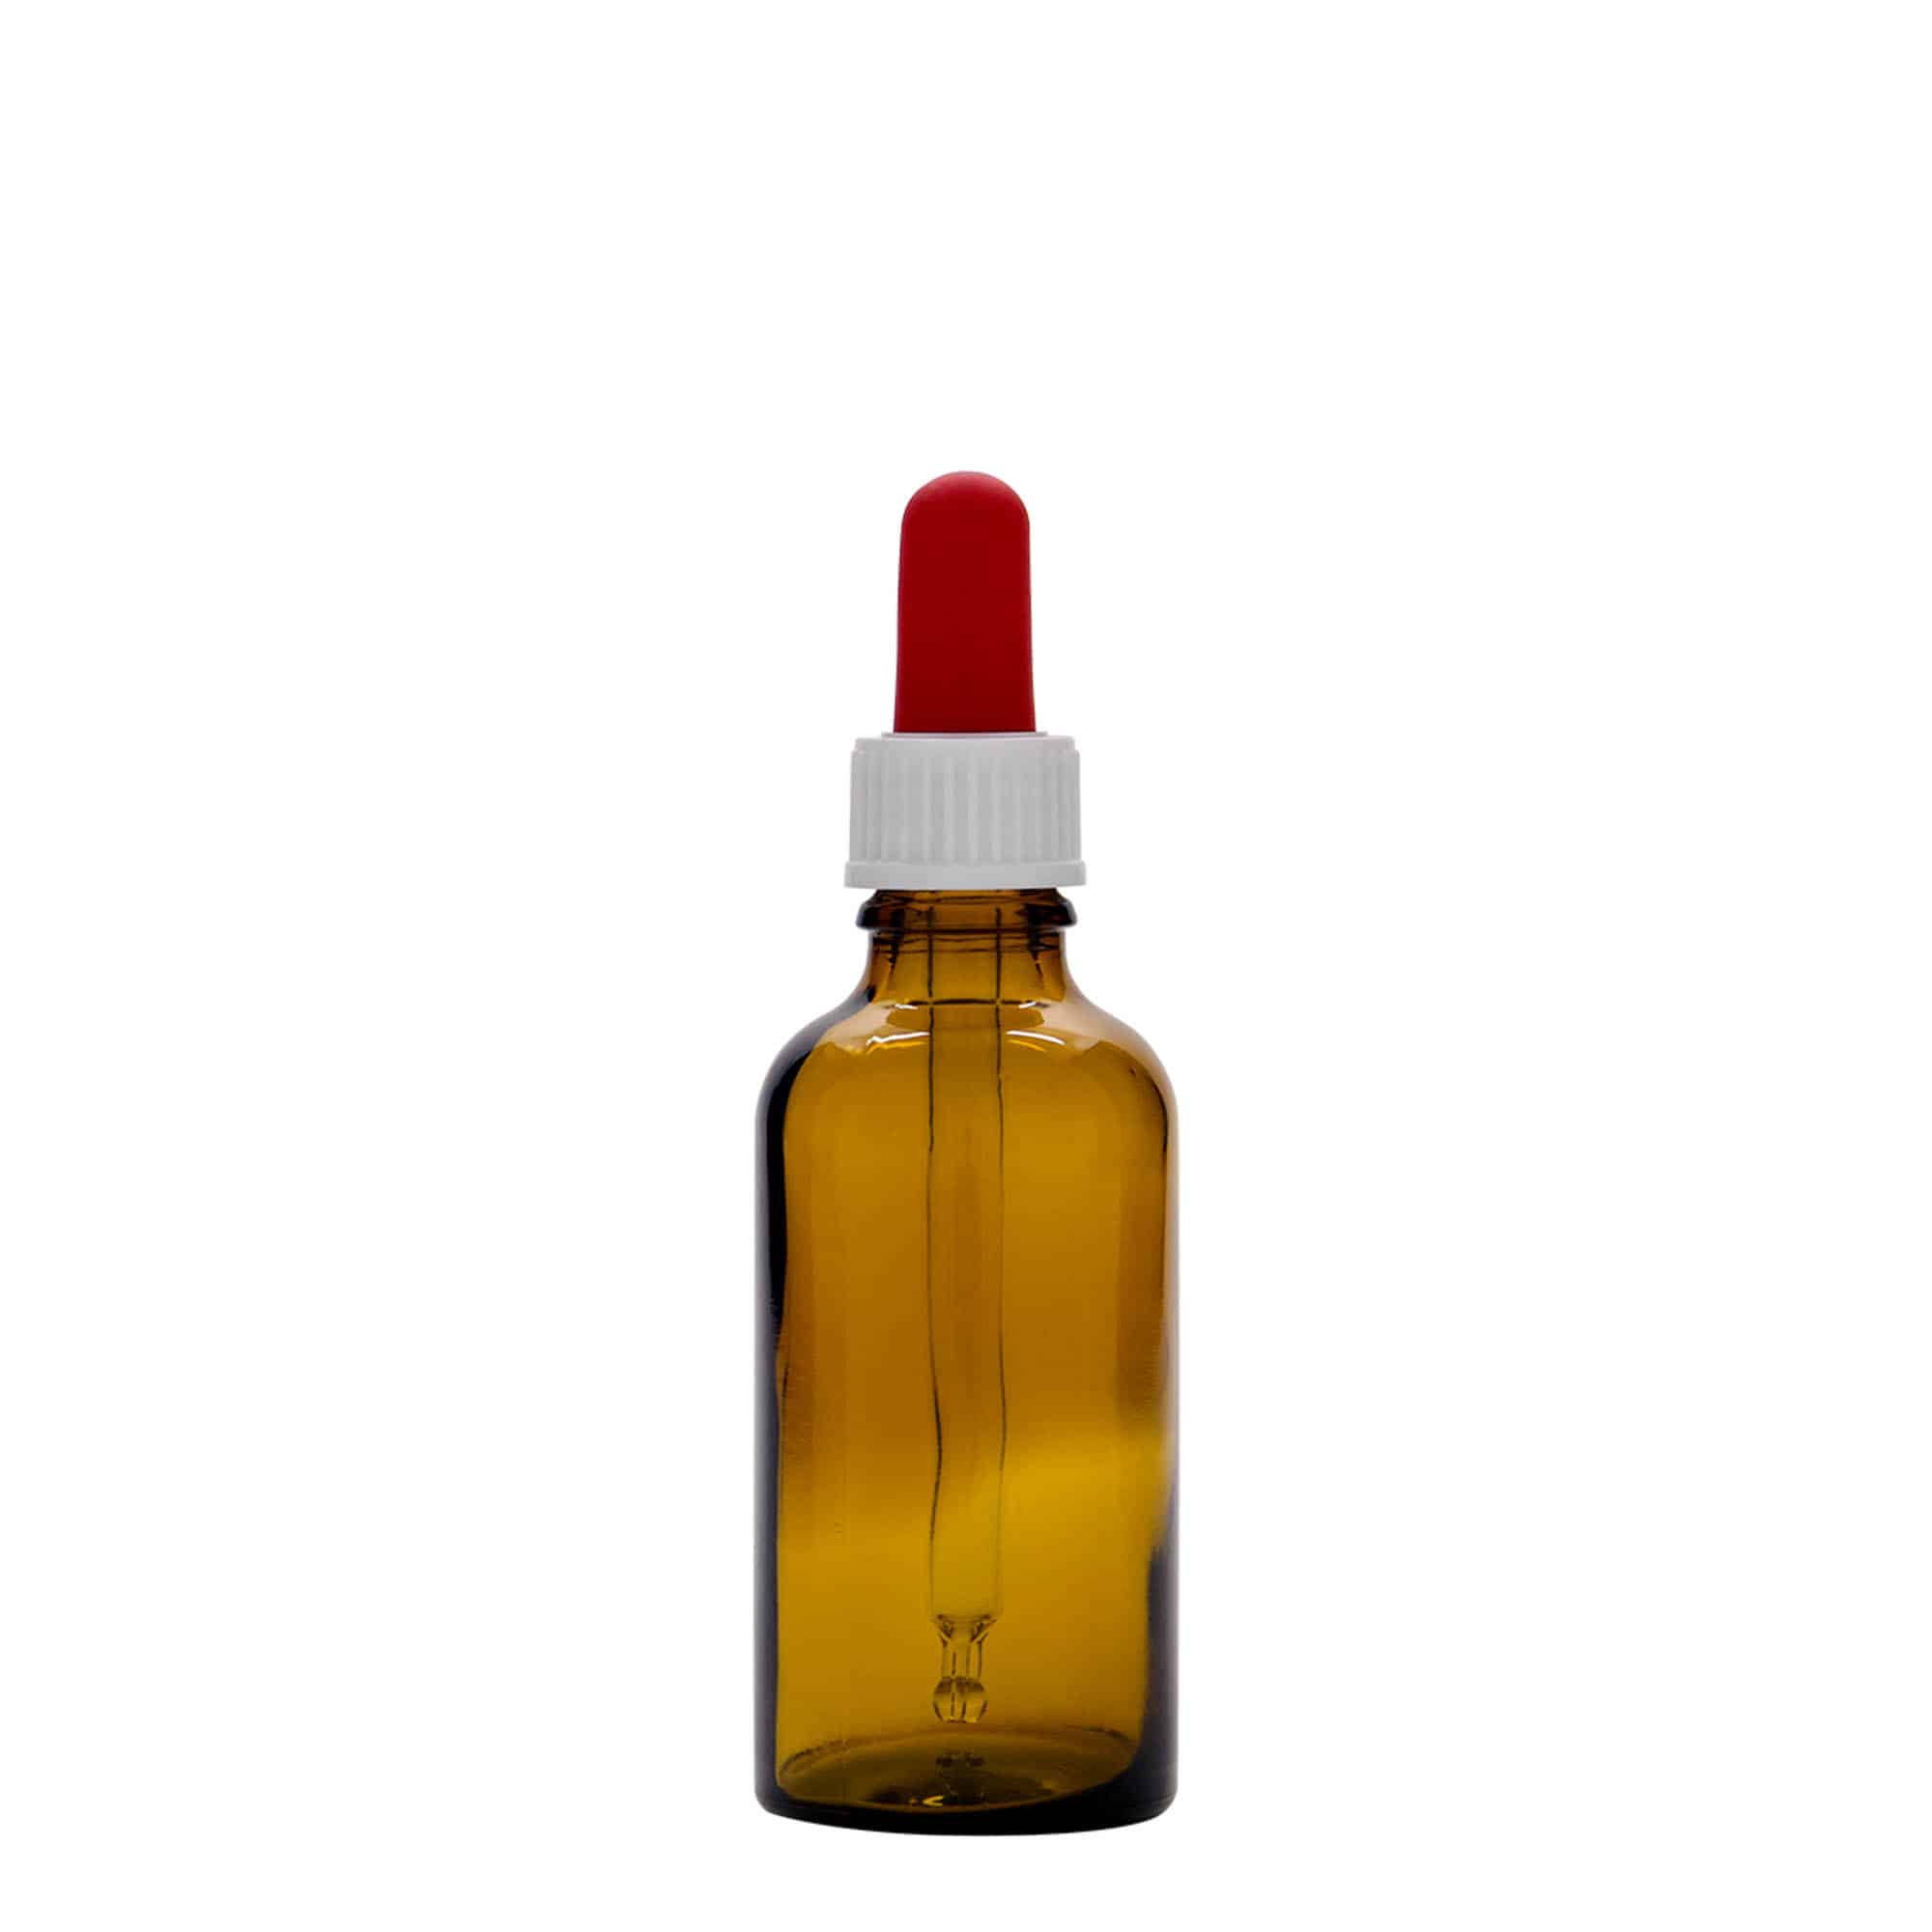 50 ml butelka farmaceutyczna z pipetą, szkło, kolor brązowo-czerwony, zamknięcie: DIN 18